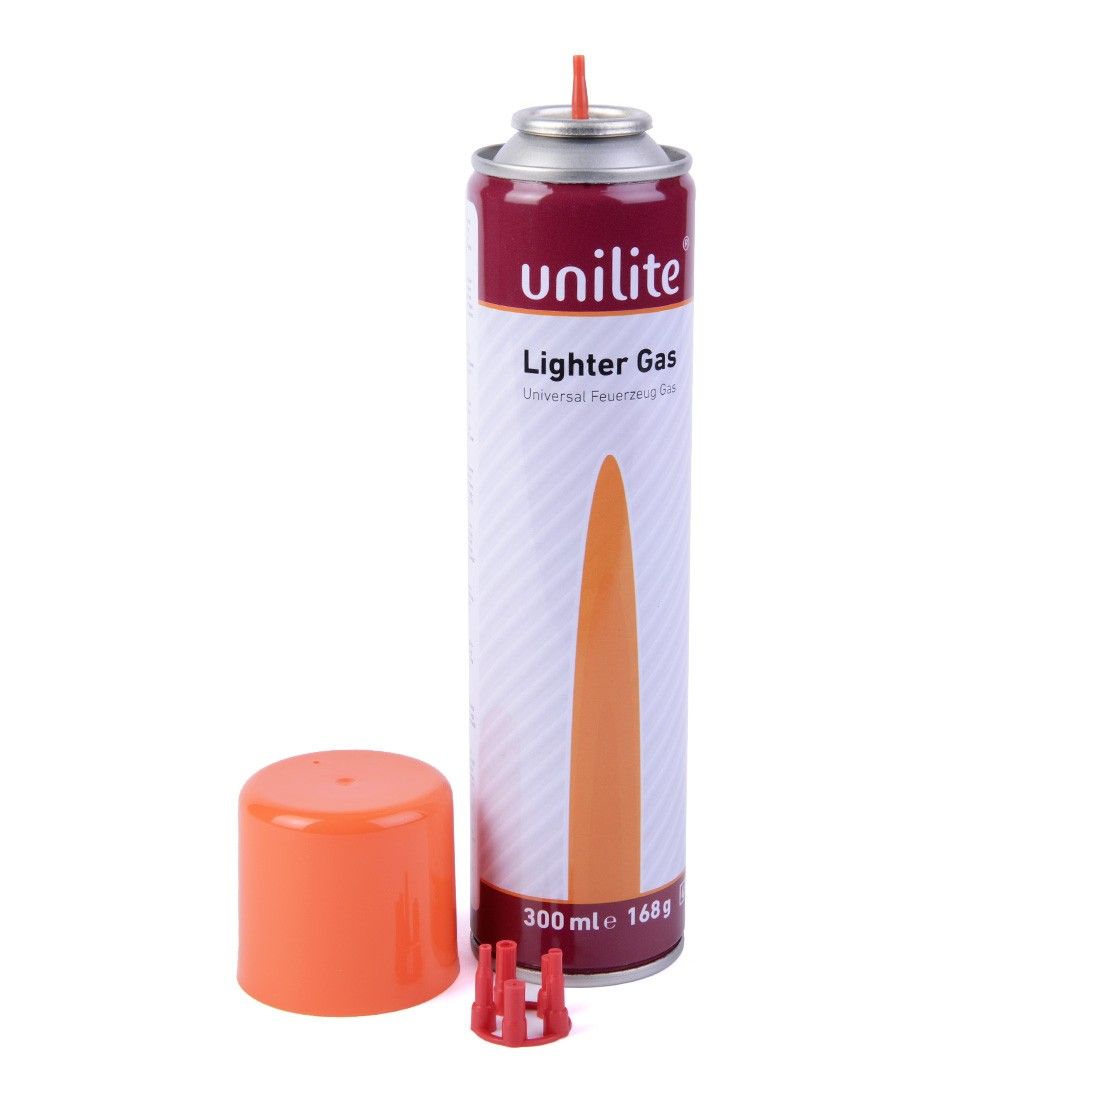 UNILITE ® U-828 02 briquet électronique (rouge/noir, AS/ABS, 18g) comme  goodies d'entreprise Sur